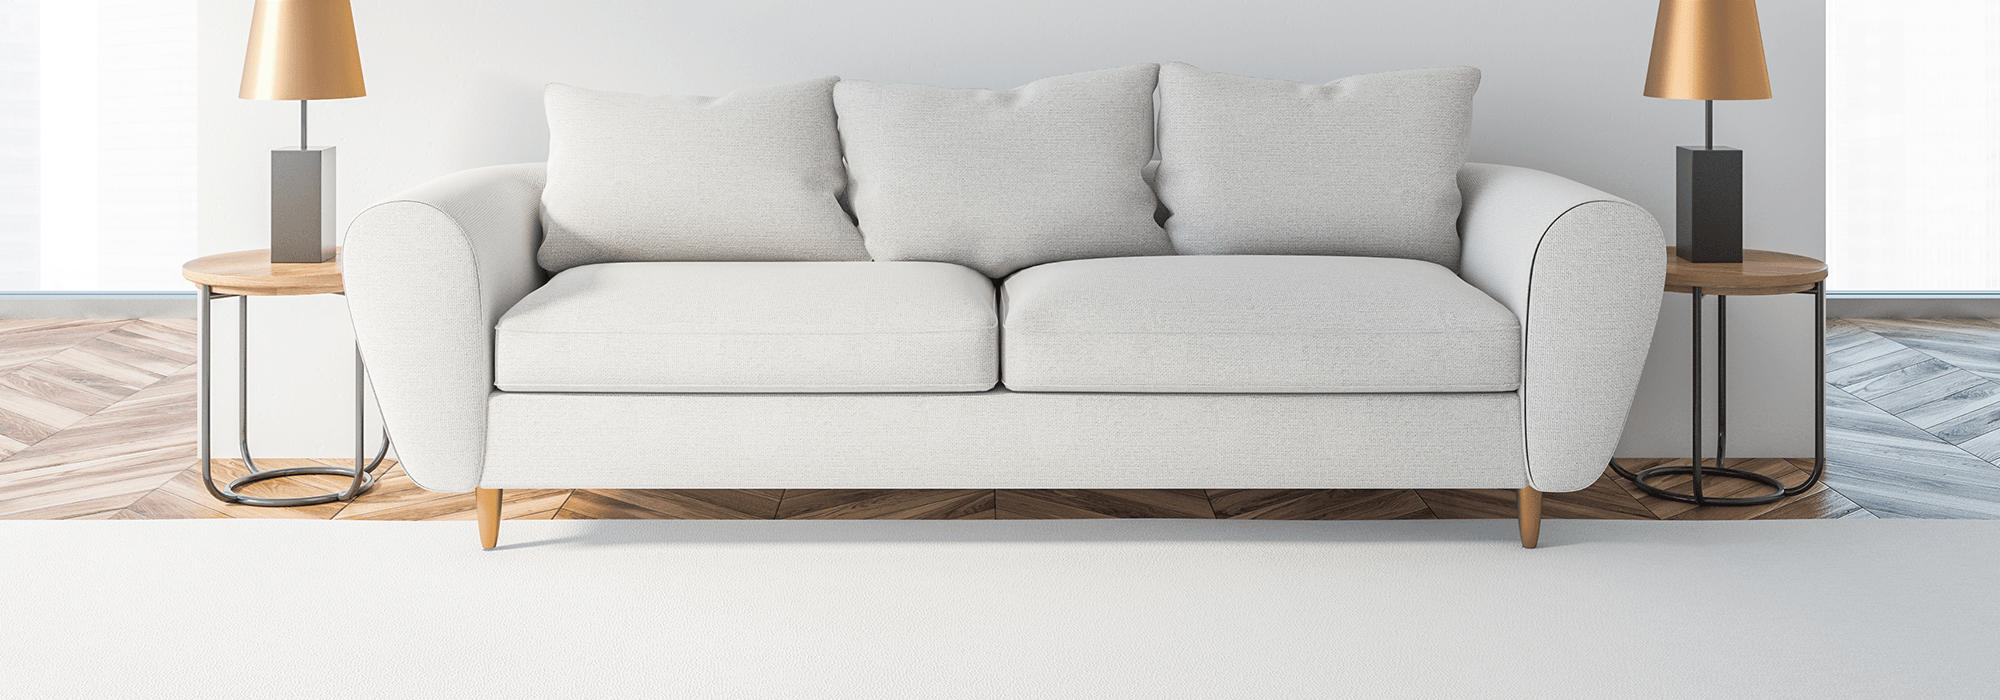 Comment nettoyer un canapé en cuir blanc ? - Cdiscount